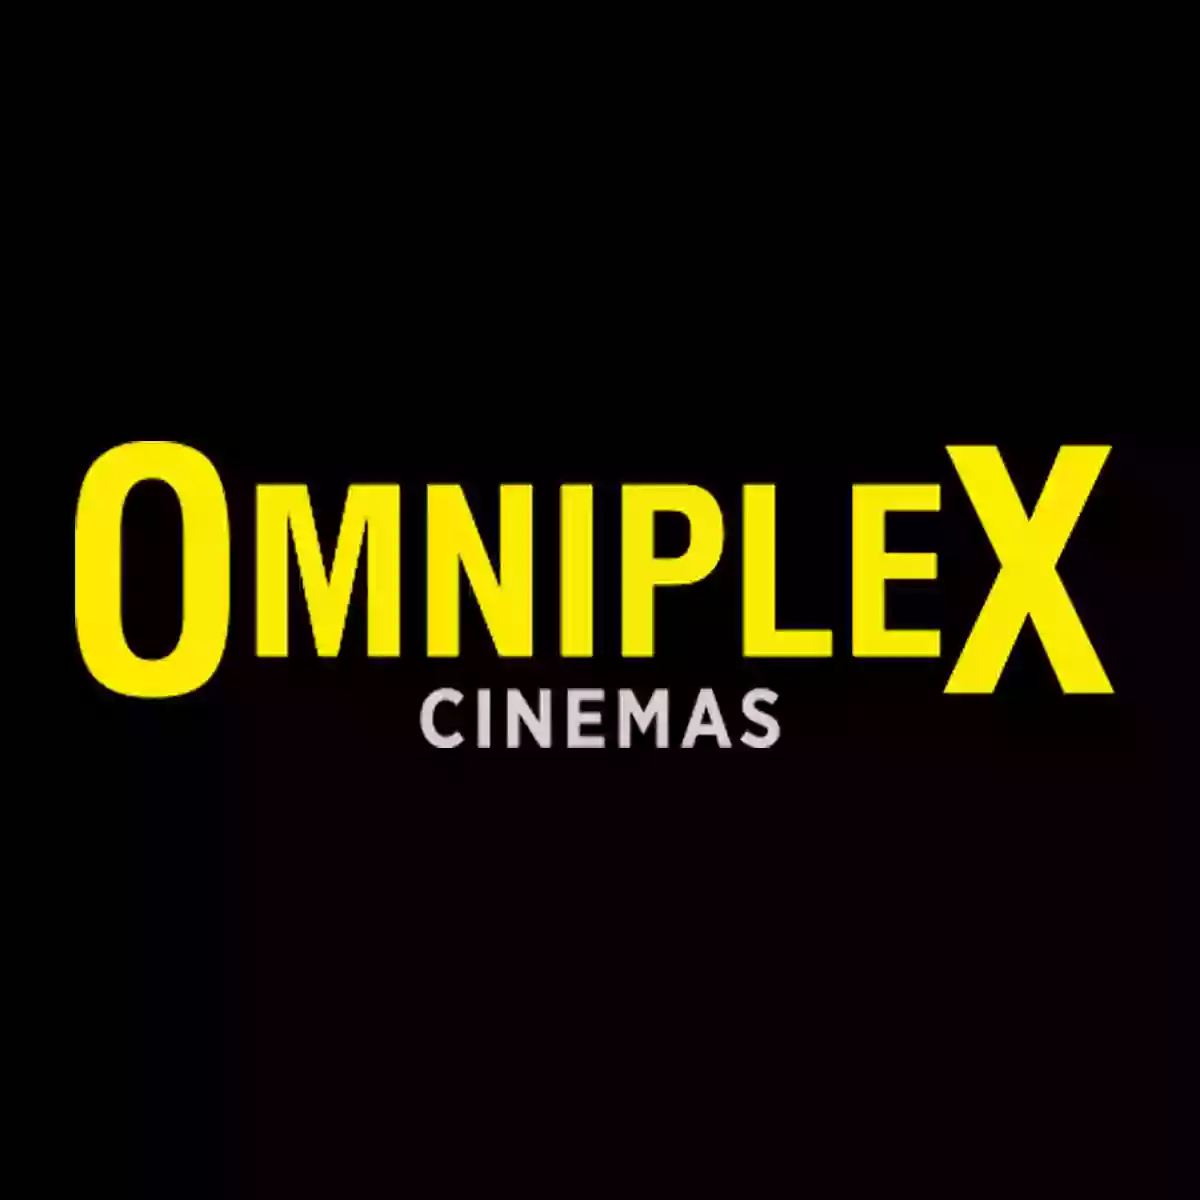 Omniplex Cinema Tralee